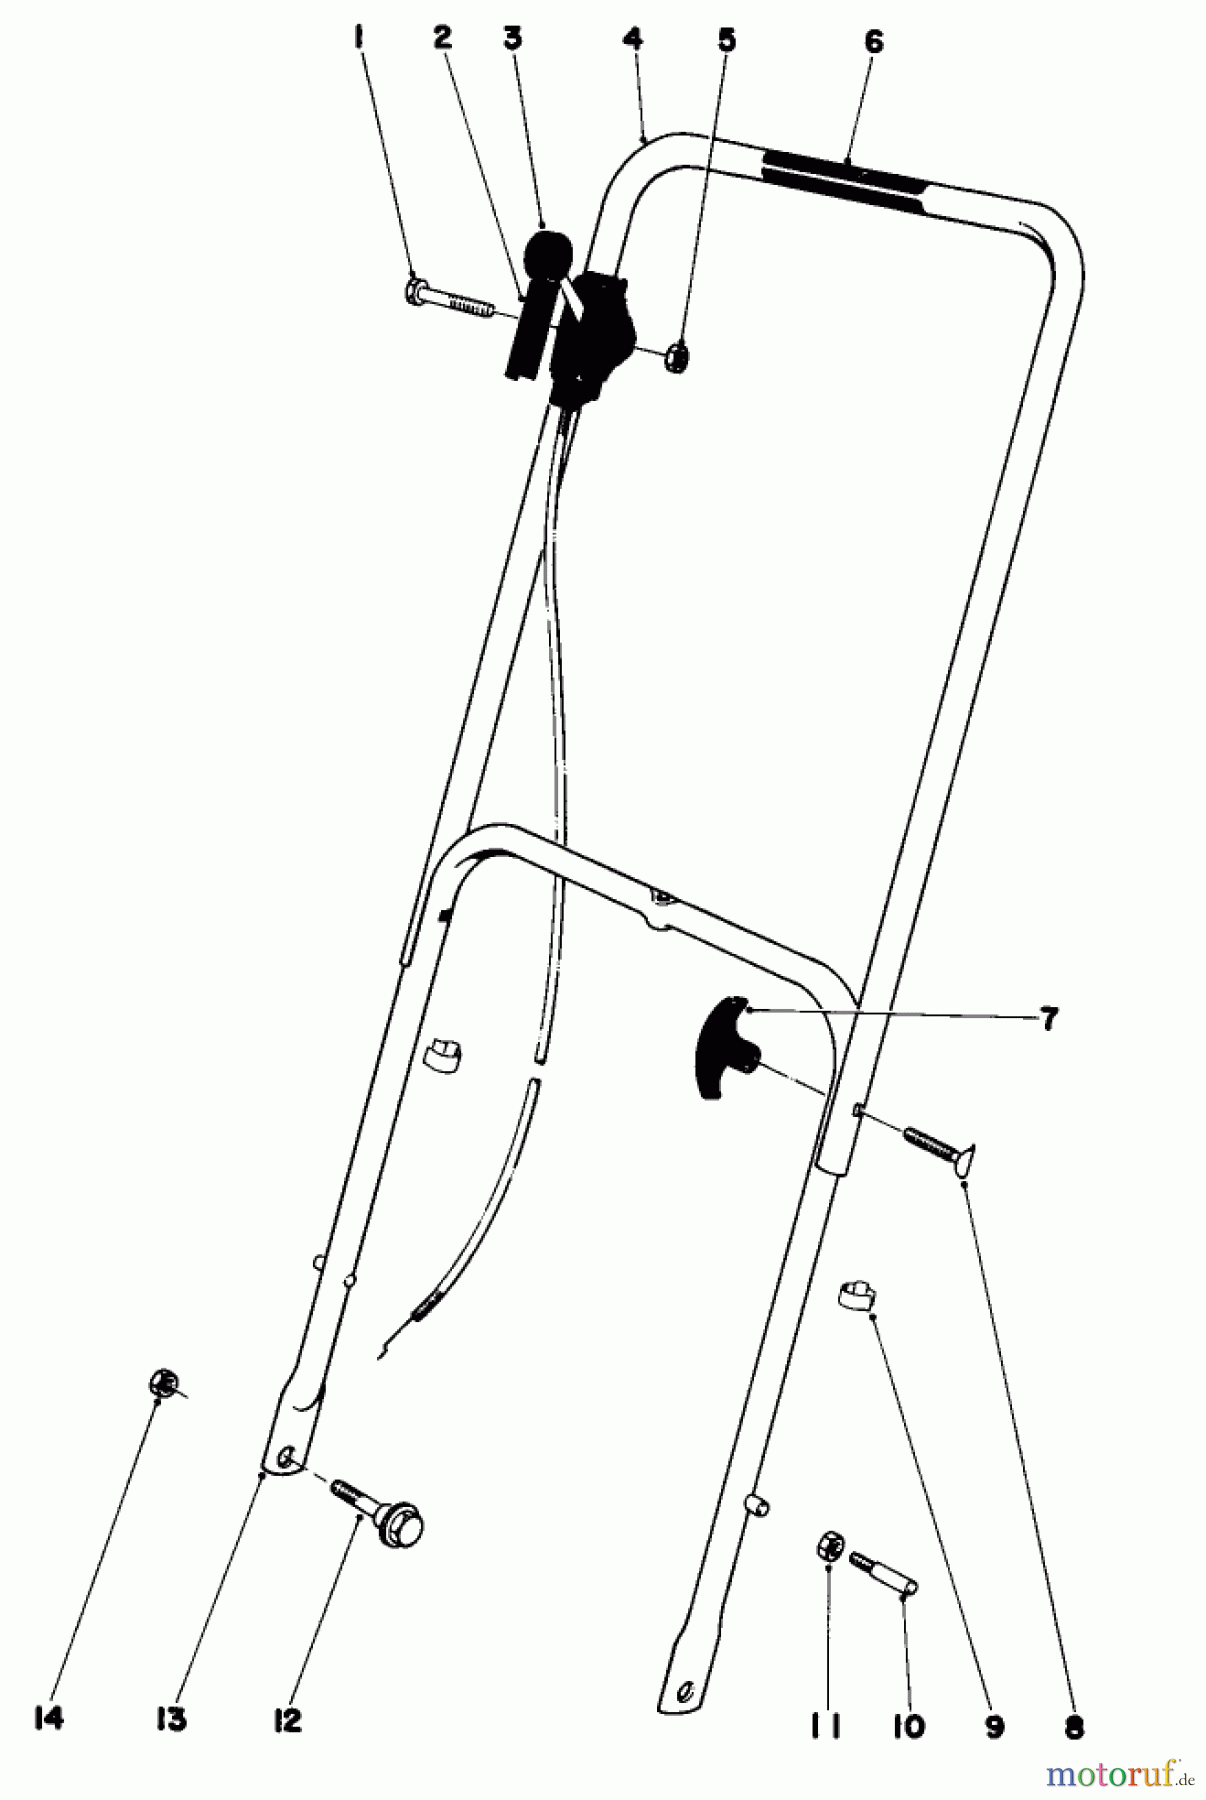  Toro Neu Mowers, Walk-Behind Seite 1 16277 - Toro Whirlwind Lawnmower, 1979 (9000001-9999999) HANDLE ASSEMBLY MODEL 16009 AND 16113